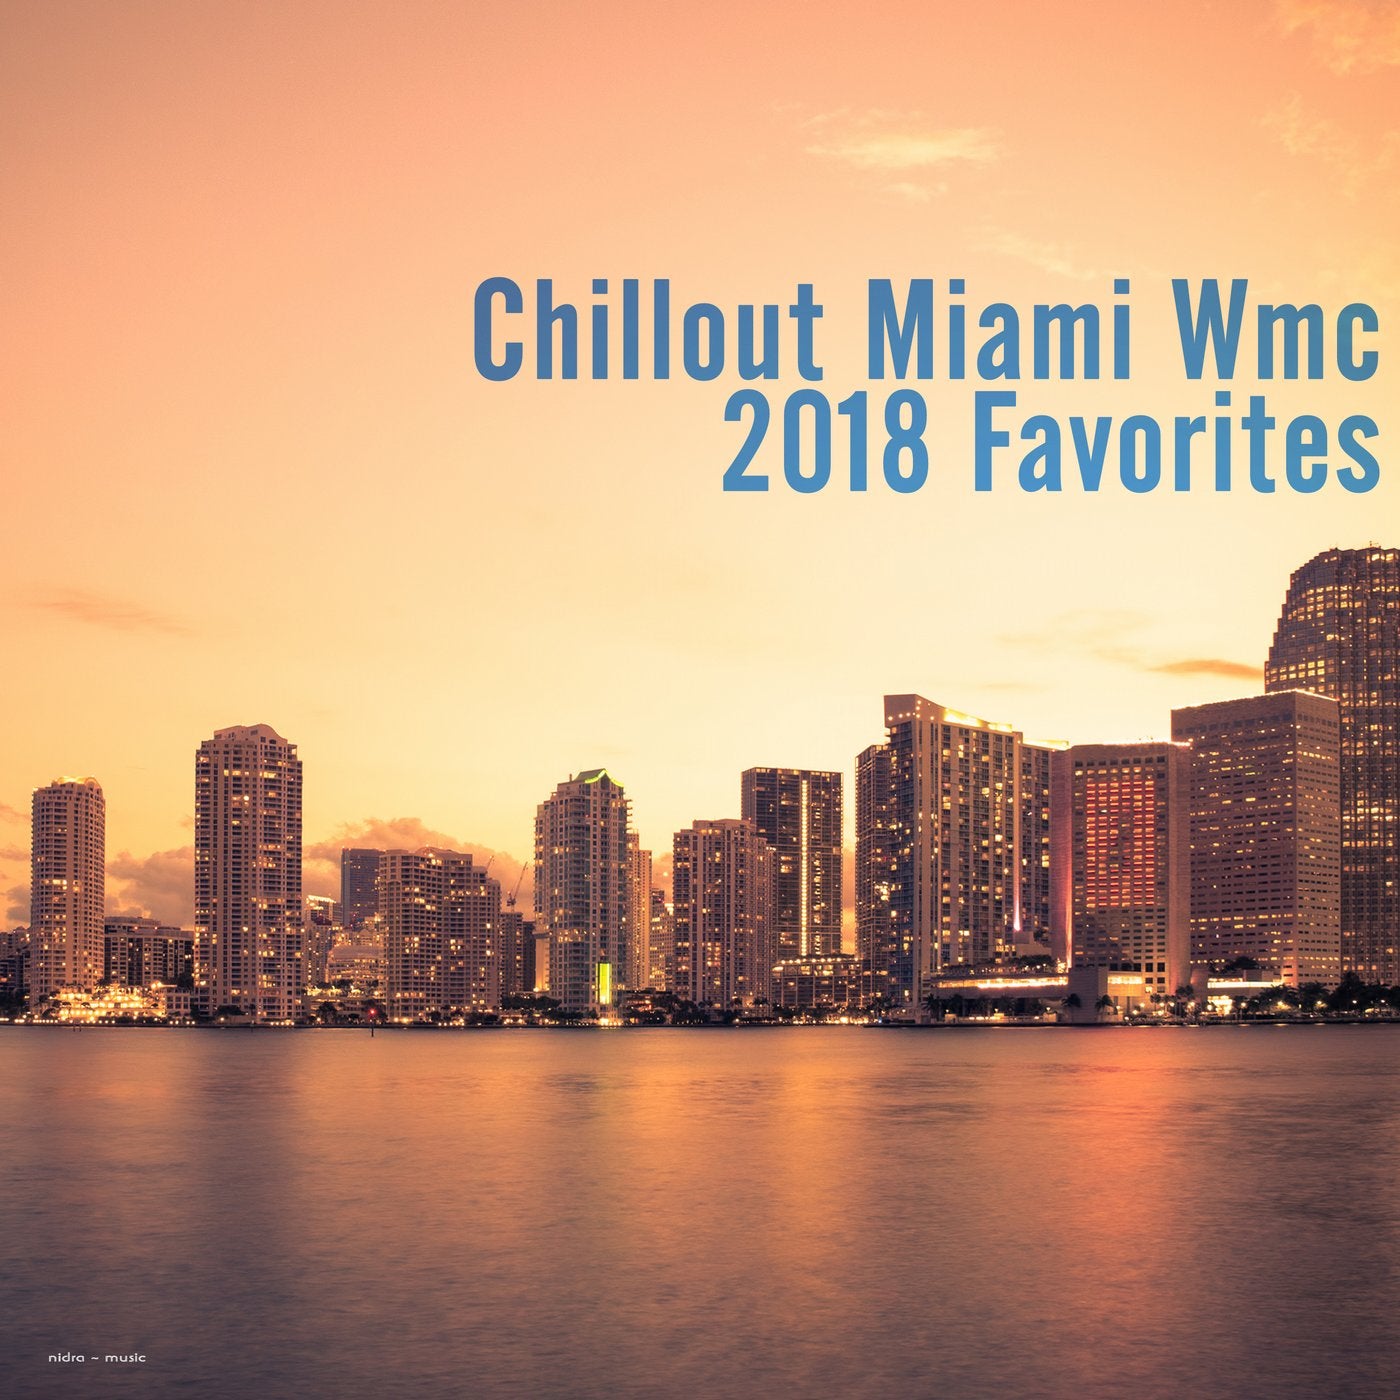 Chillout Miami: WMC 2018 Favorites